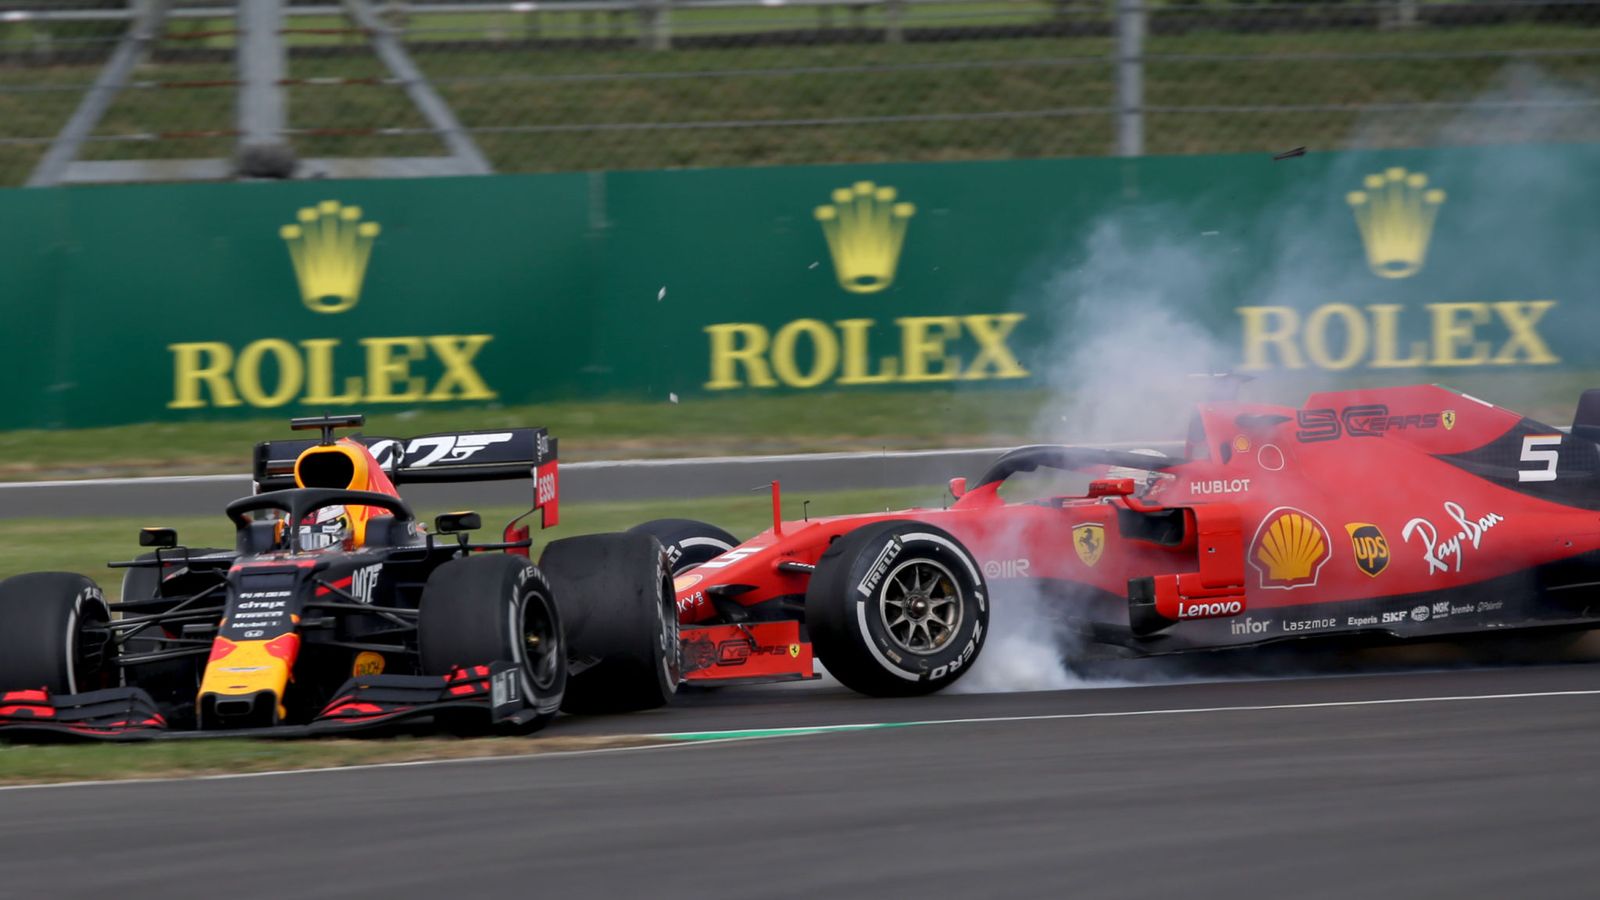 Vettel Verstappen crash